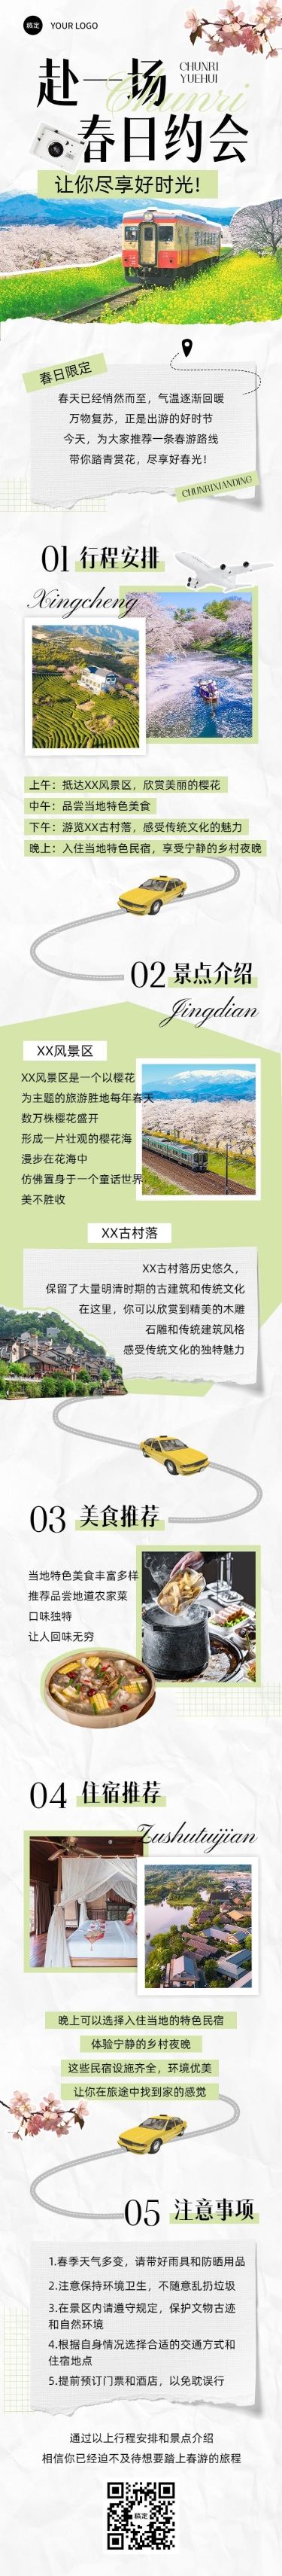 春游旅游路线宣传微信公众号文章长图